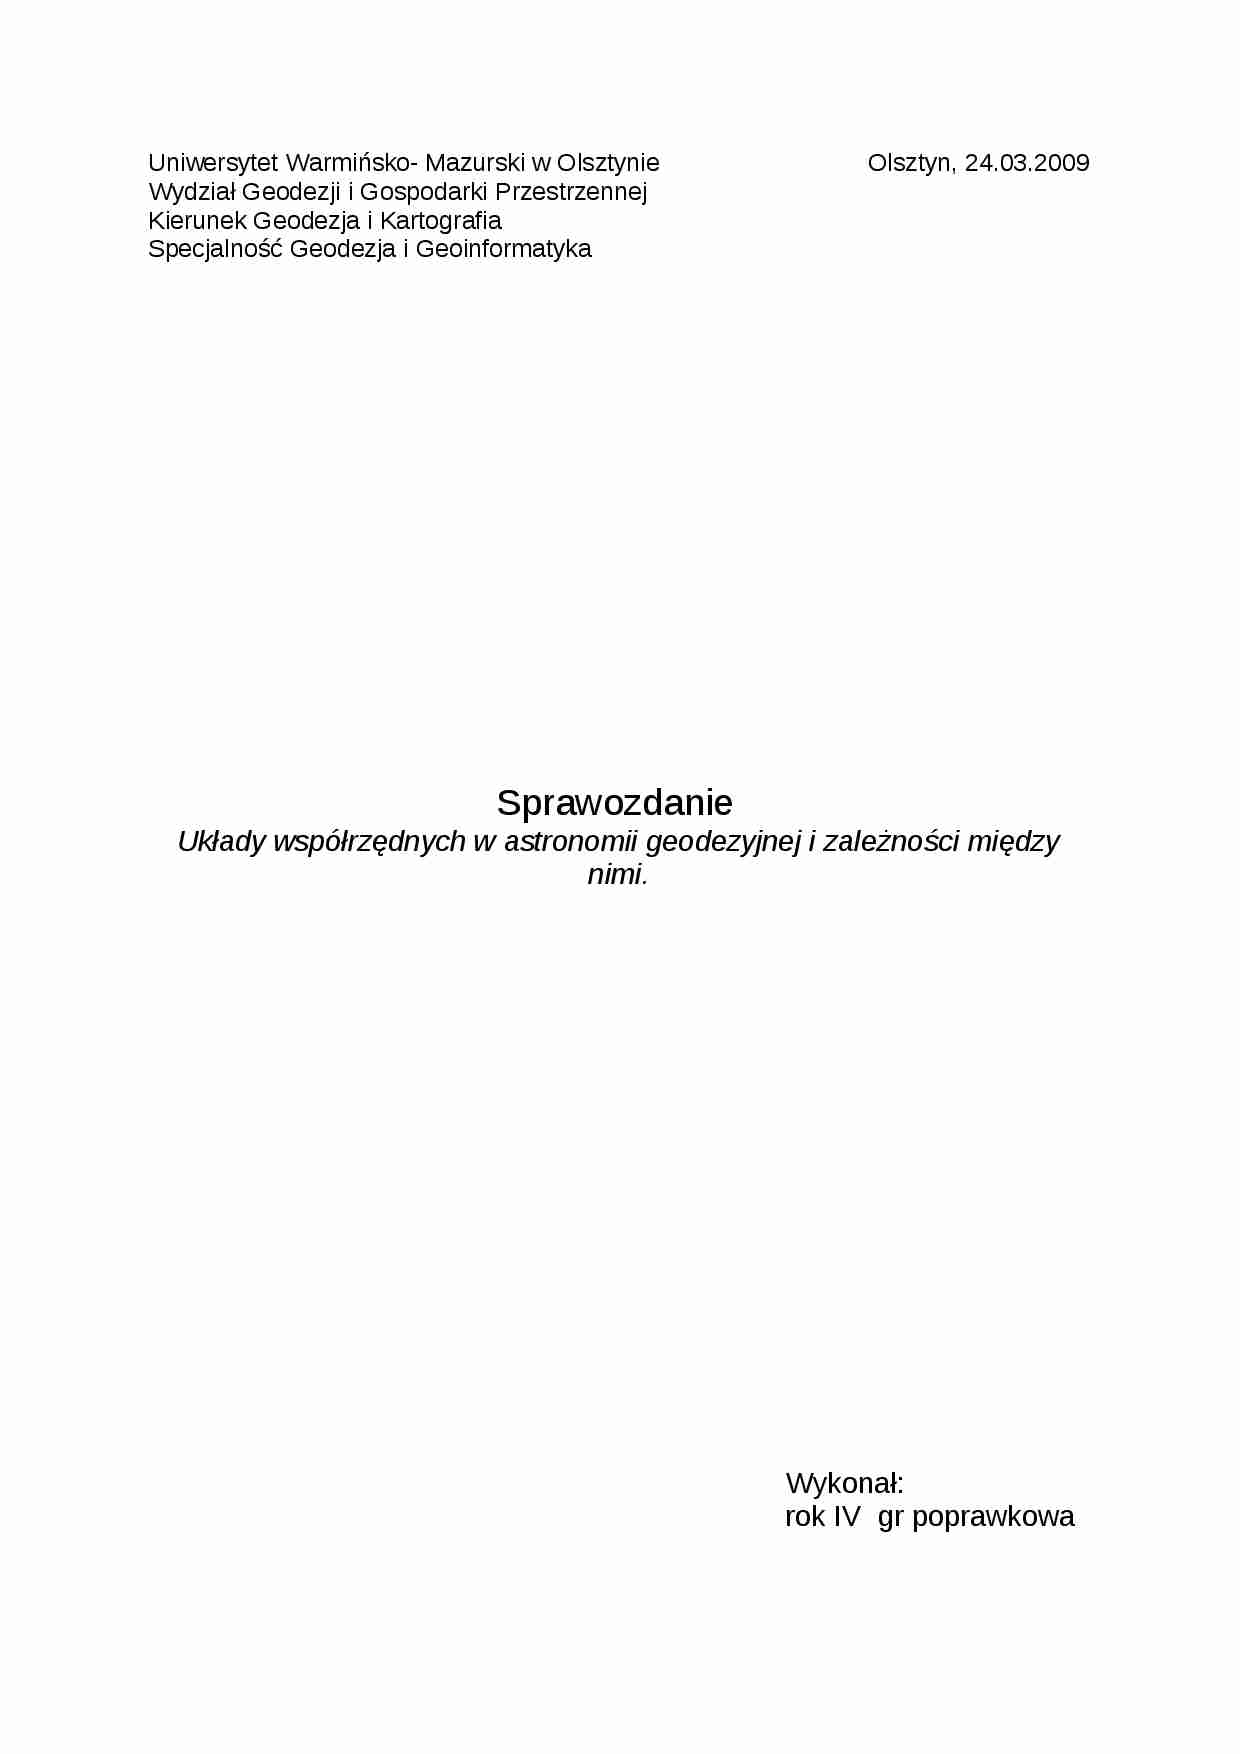 Układy współrzeędnych w astronomii geodezyjnej-opracowanie - strona 1